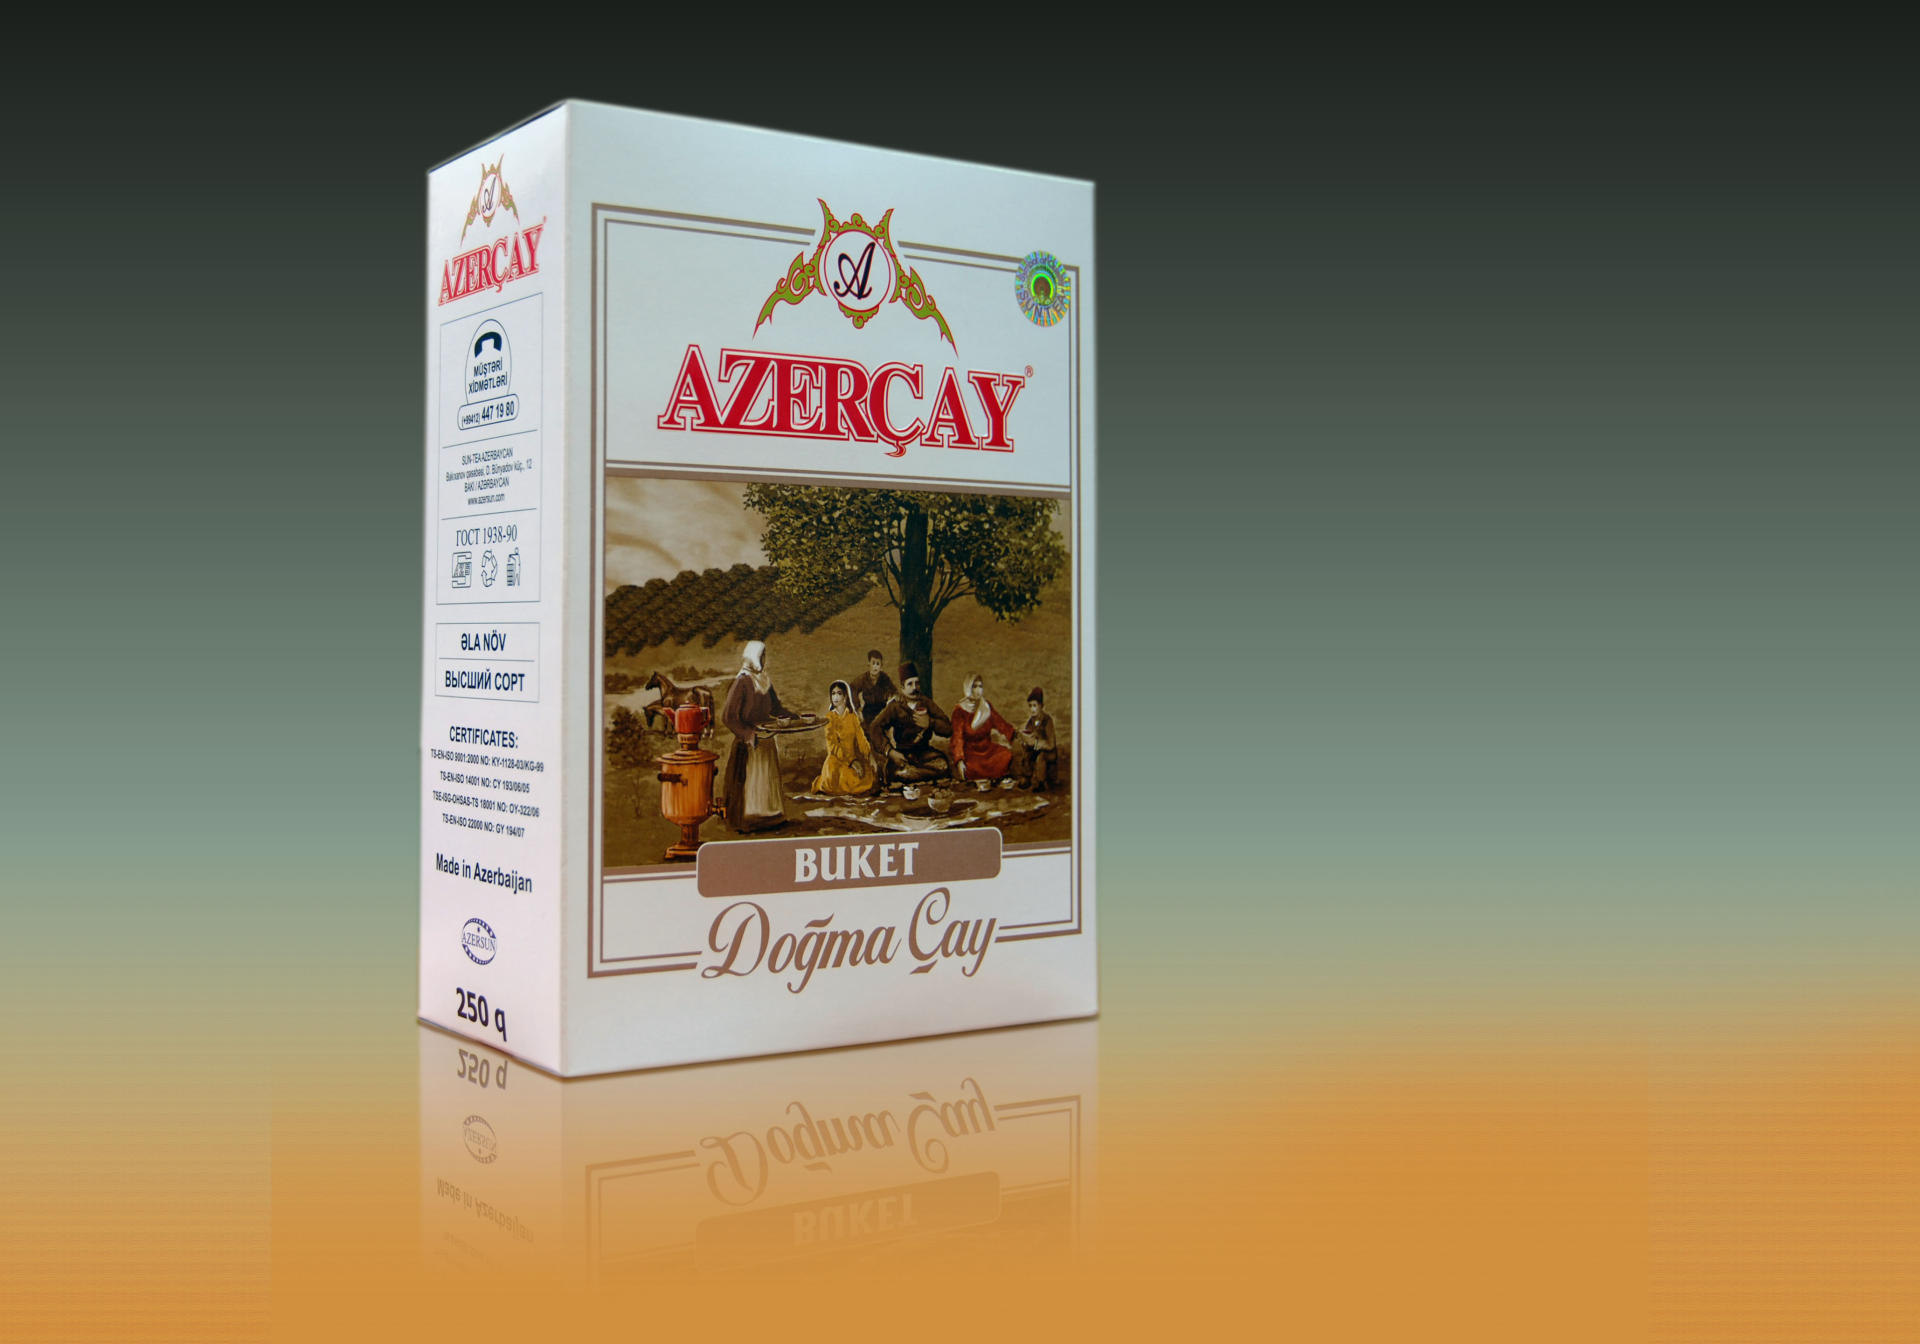 “Azərçay” Azexport.az portalı vasitəsilə ilk sifarişini alıb